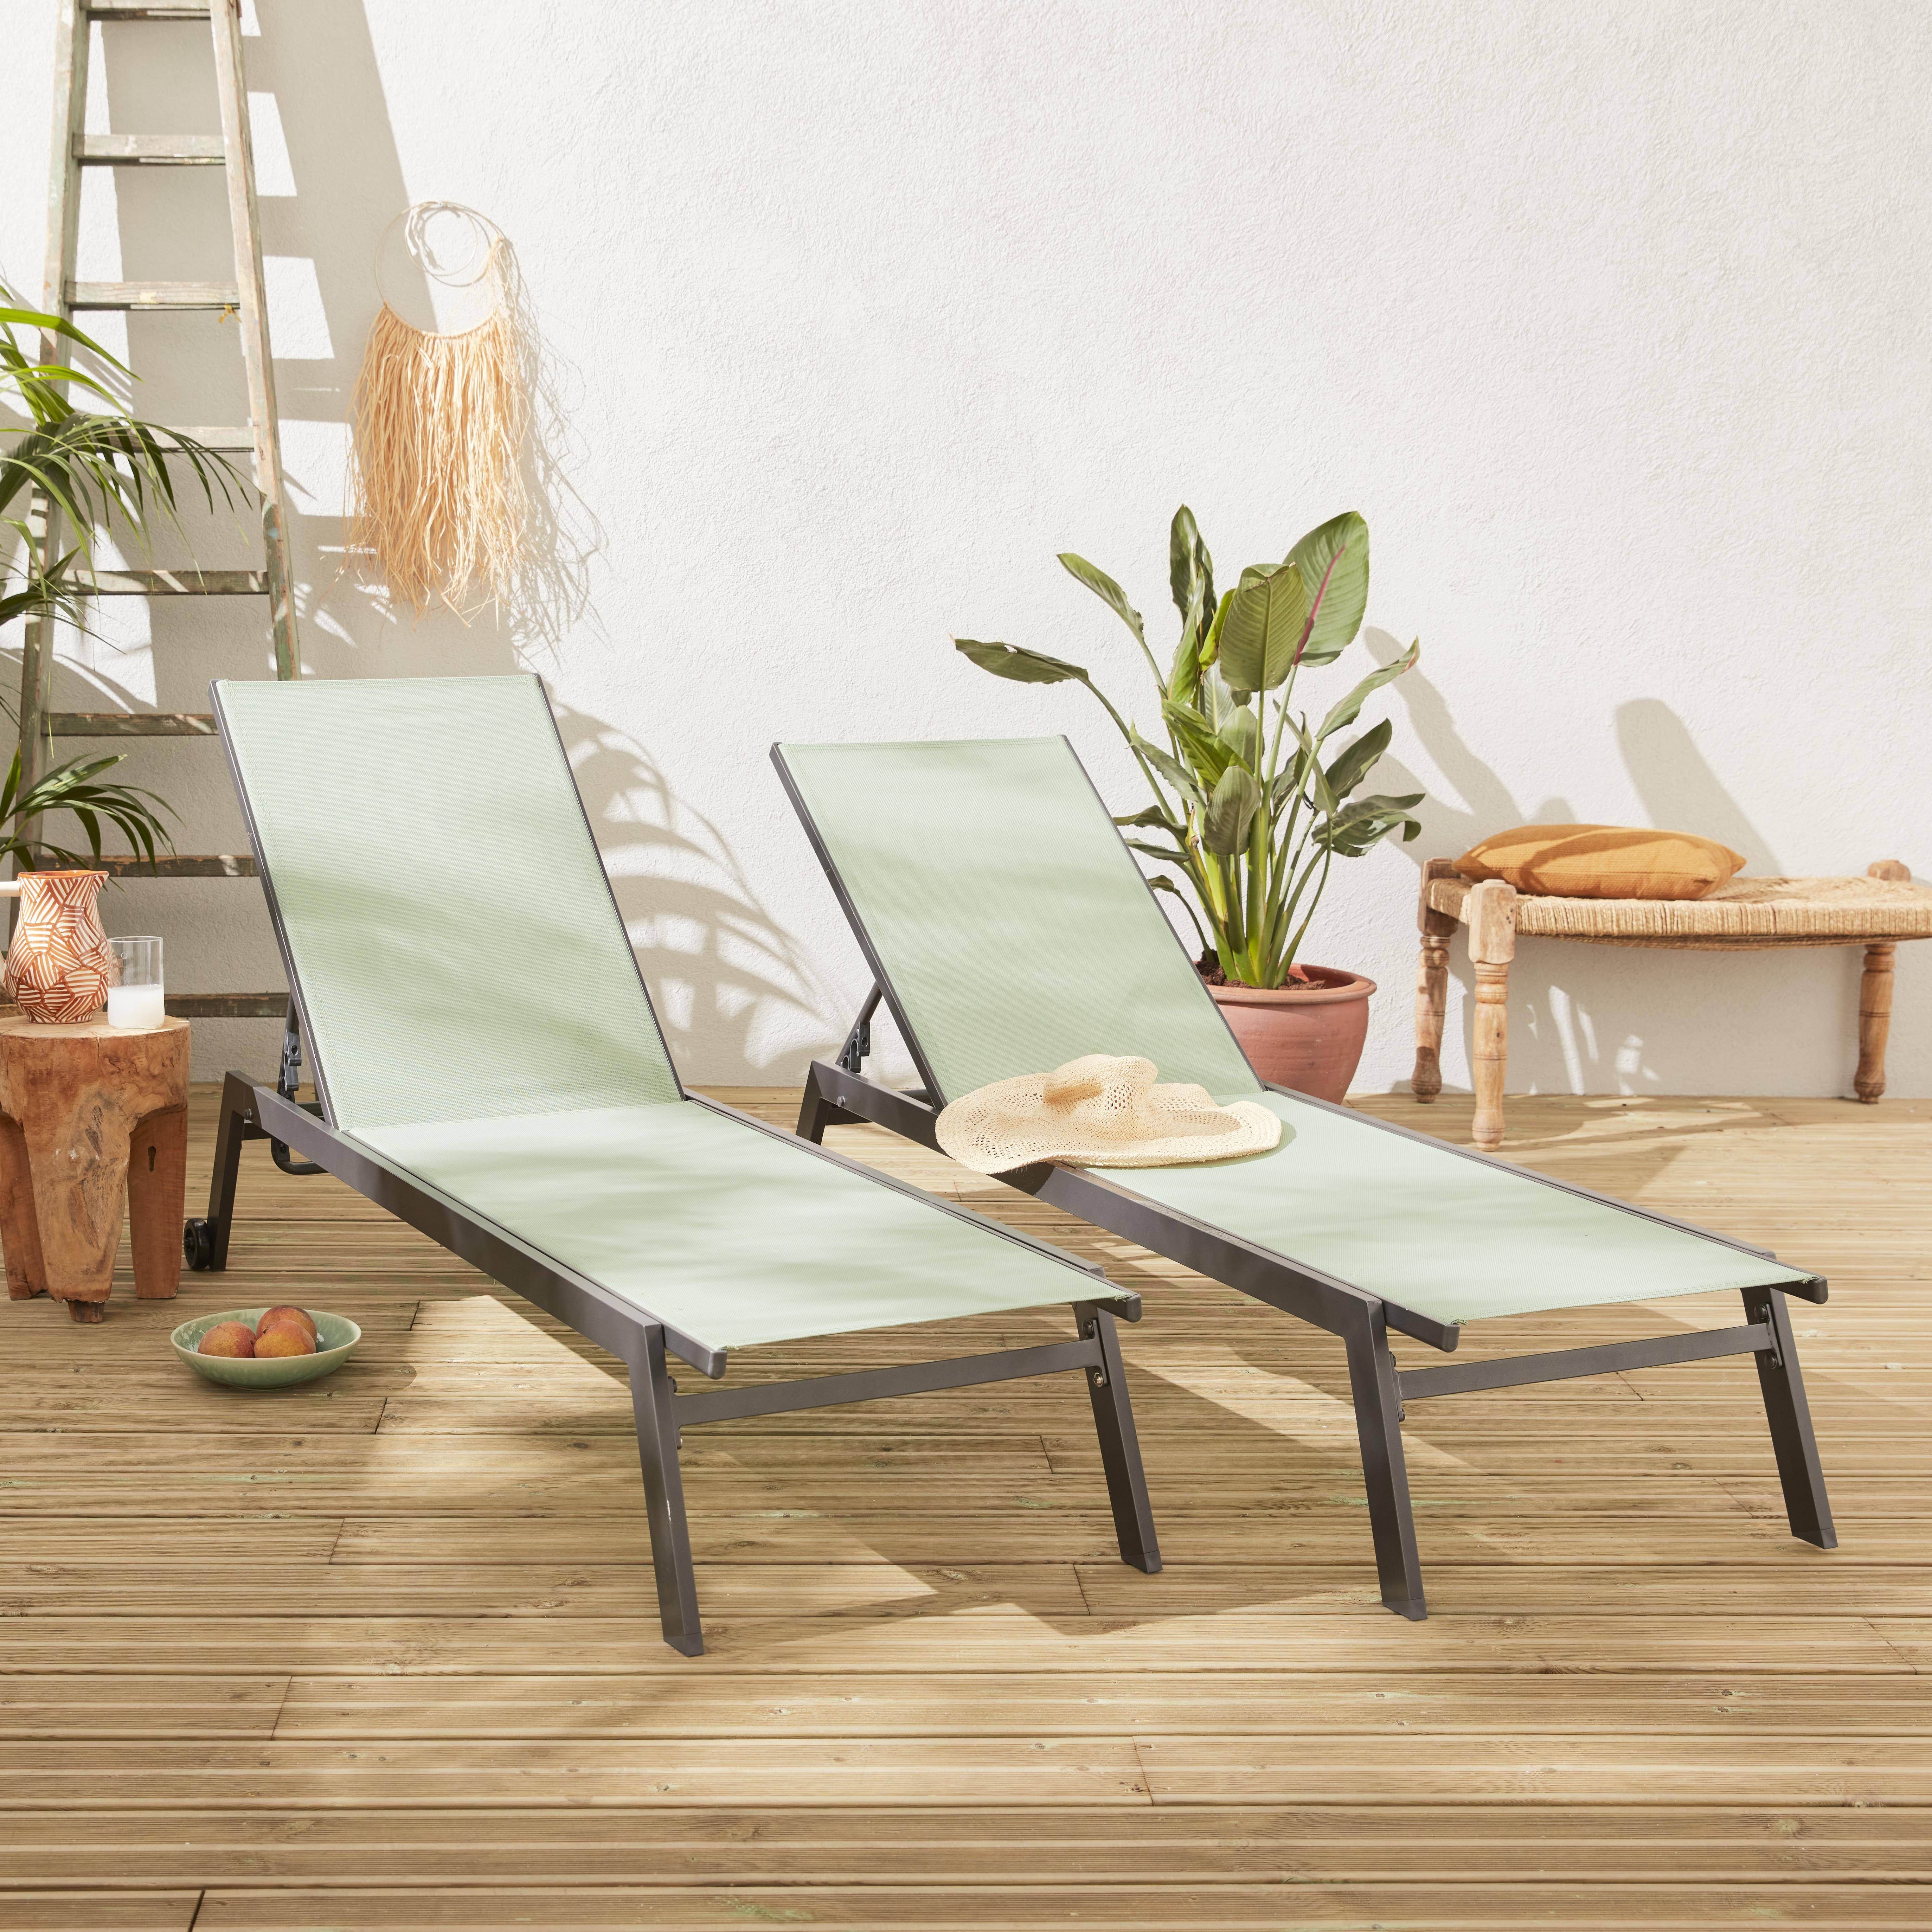 Set mit 2 ELSA Sonnenliegen aus anthrazitfarbenem Aluminium und Textilene in graugrün, Liegestühle mit mehreren Positionen und Rädern Photo1